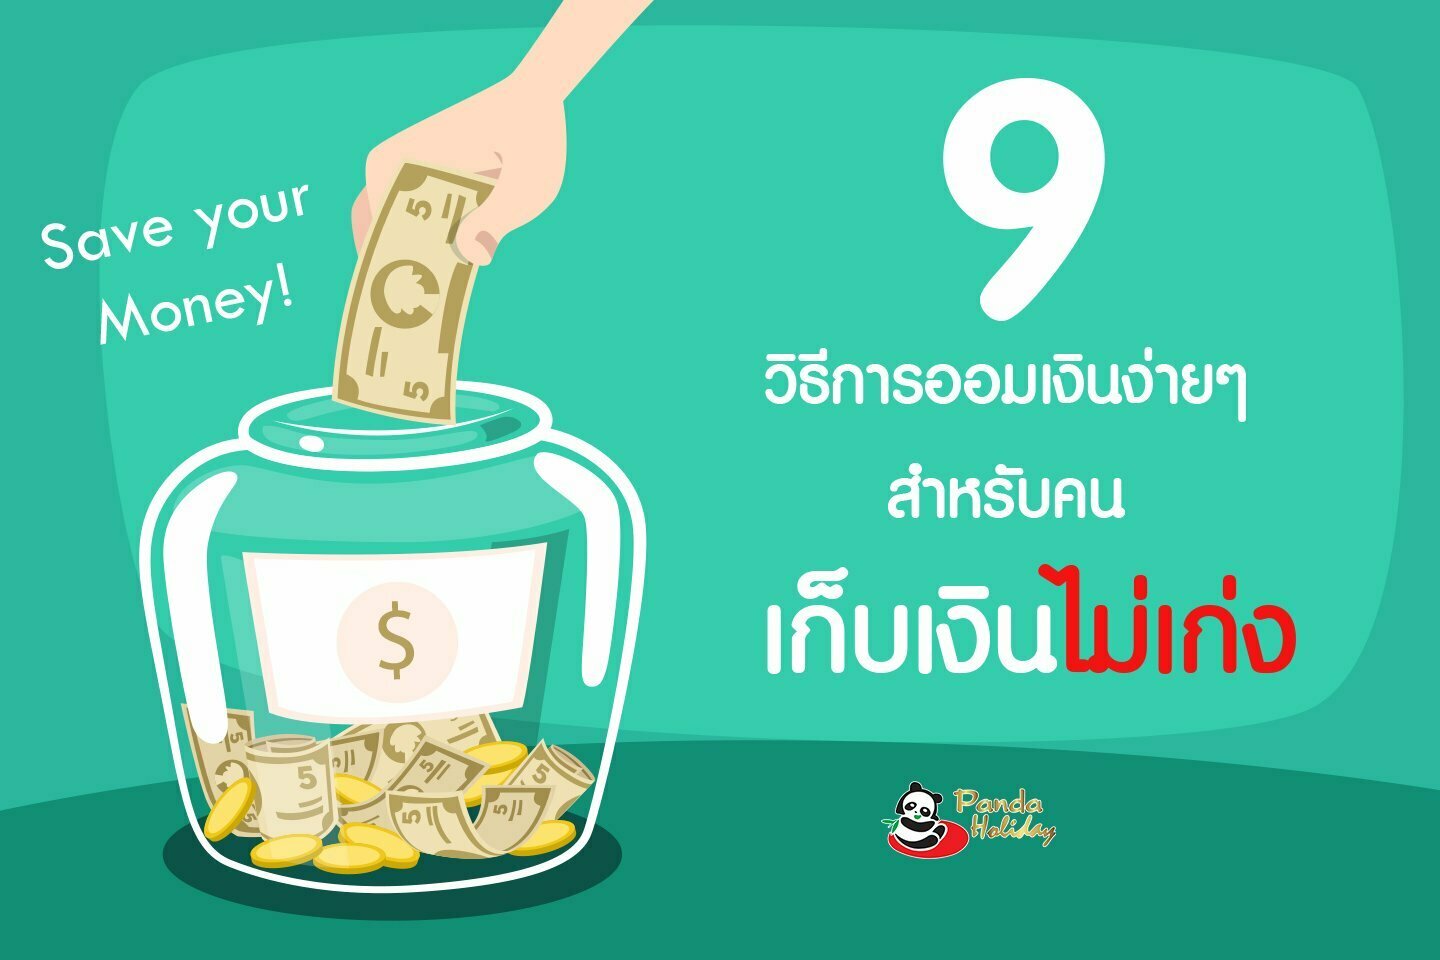 9 วิธีออมเงินง่ายๆ สำหรับคน เก็บเงินไม่เก่ง